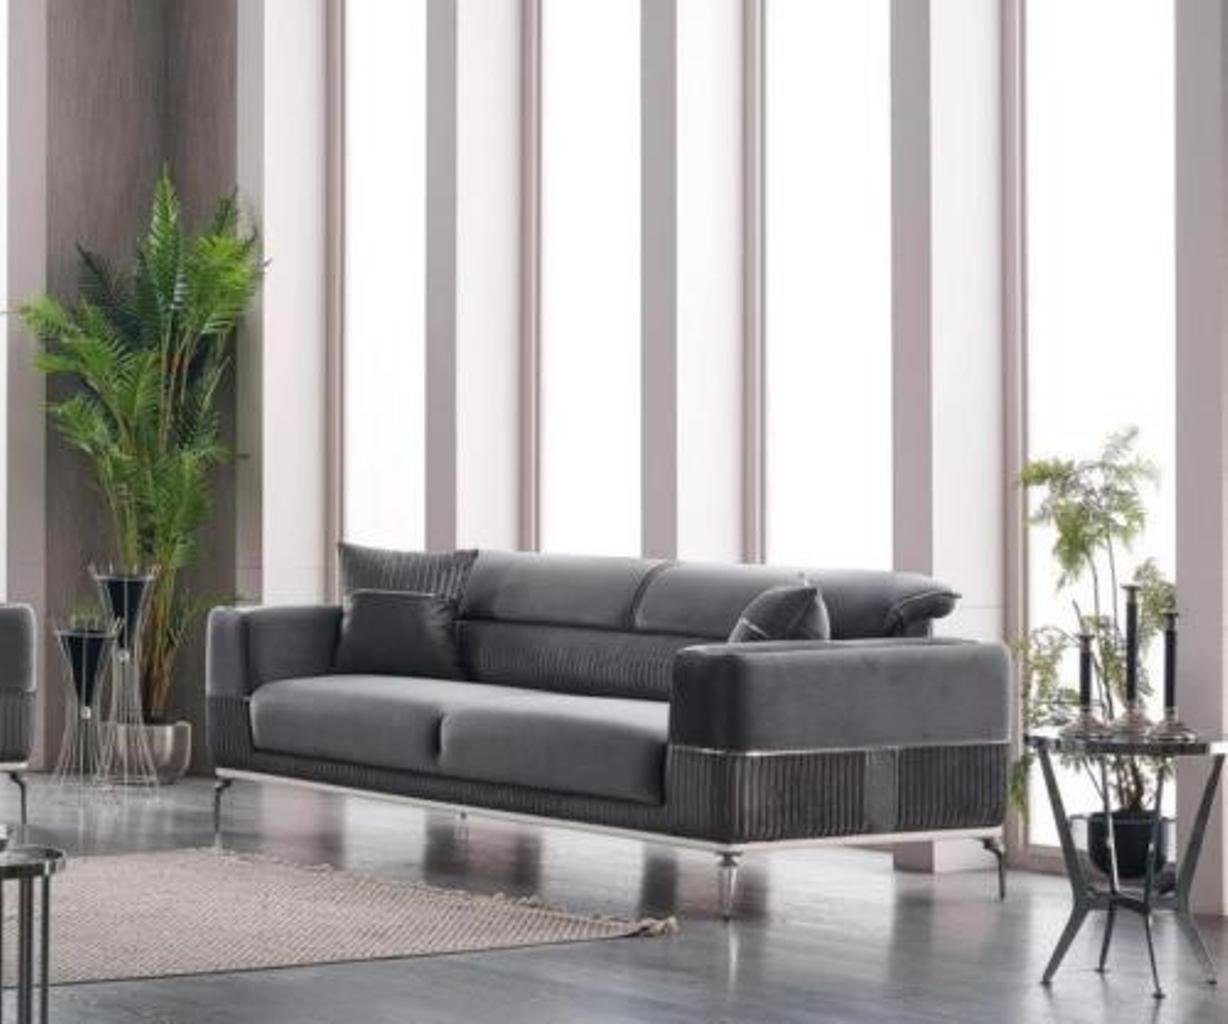 JVmoebel 3-Sitzer Polster Möbel Sitz Dreisitzer 3 Grau 1 in Made Couch Grau Textil Teile, Sofa Samt, Europa